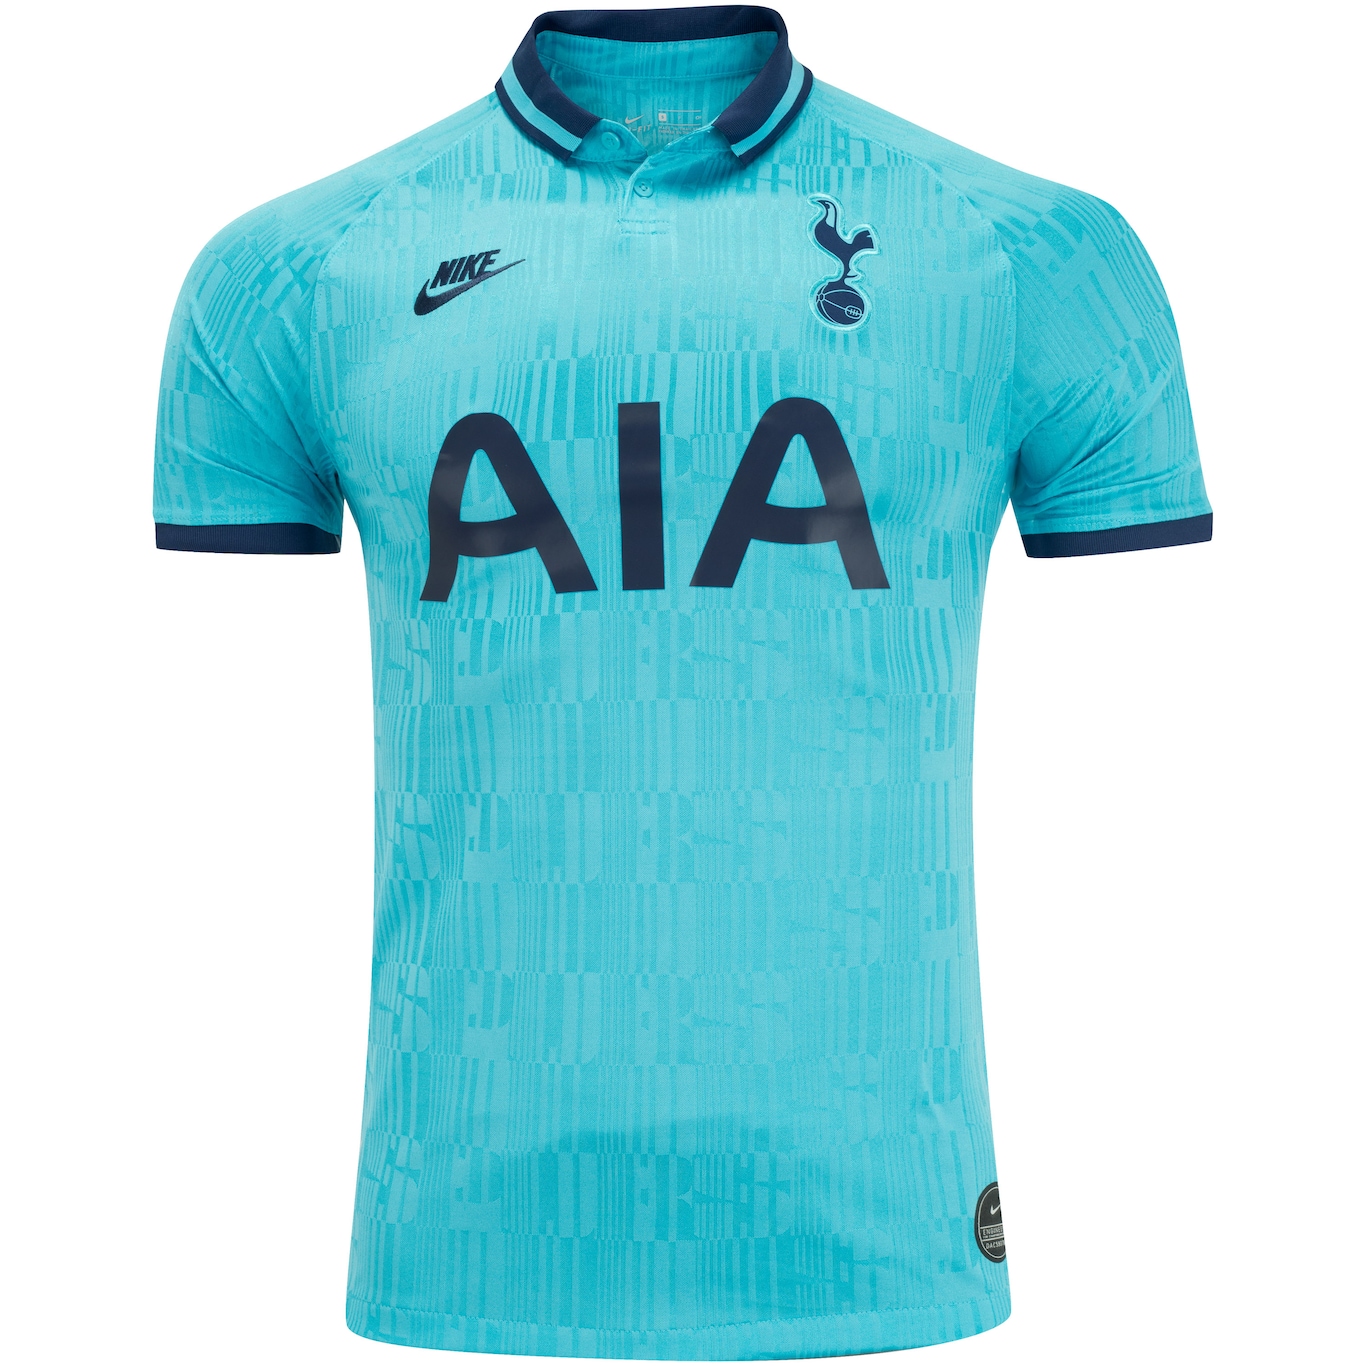 Terceira camisa do Tottenham 2019-2020 Nike » Mantos do Futebol